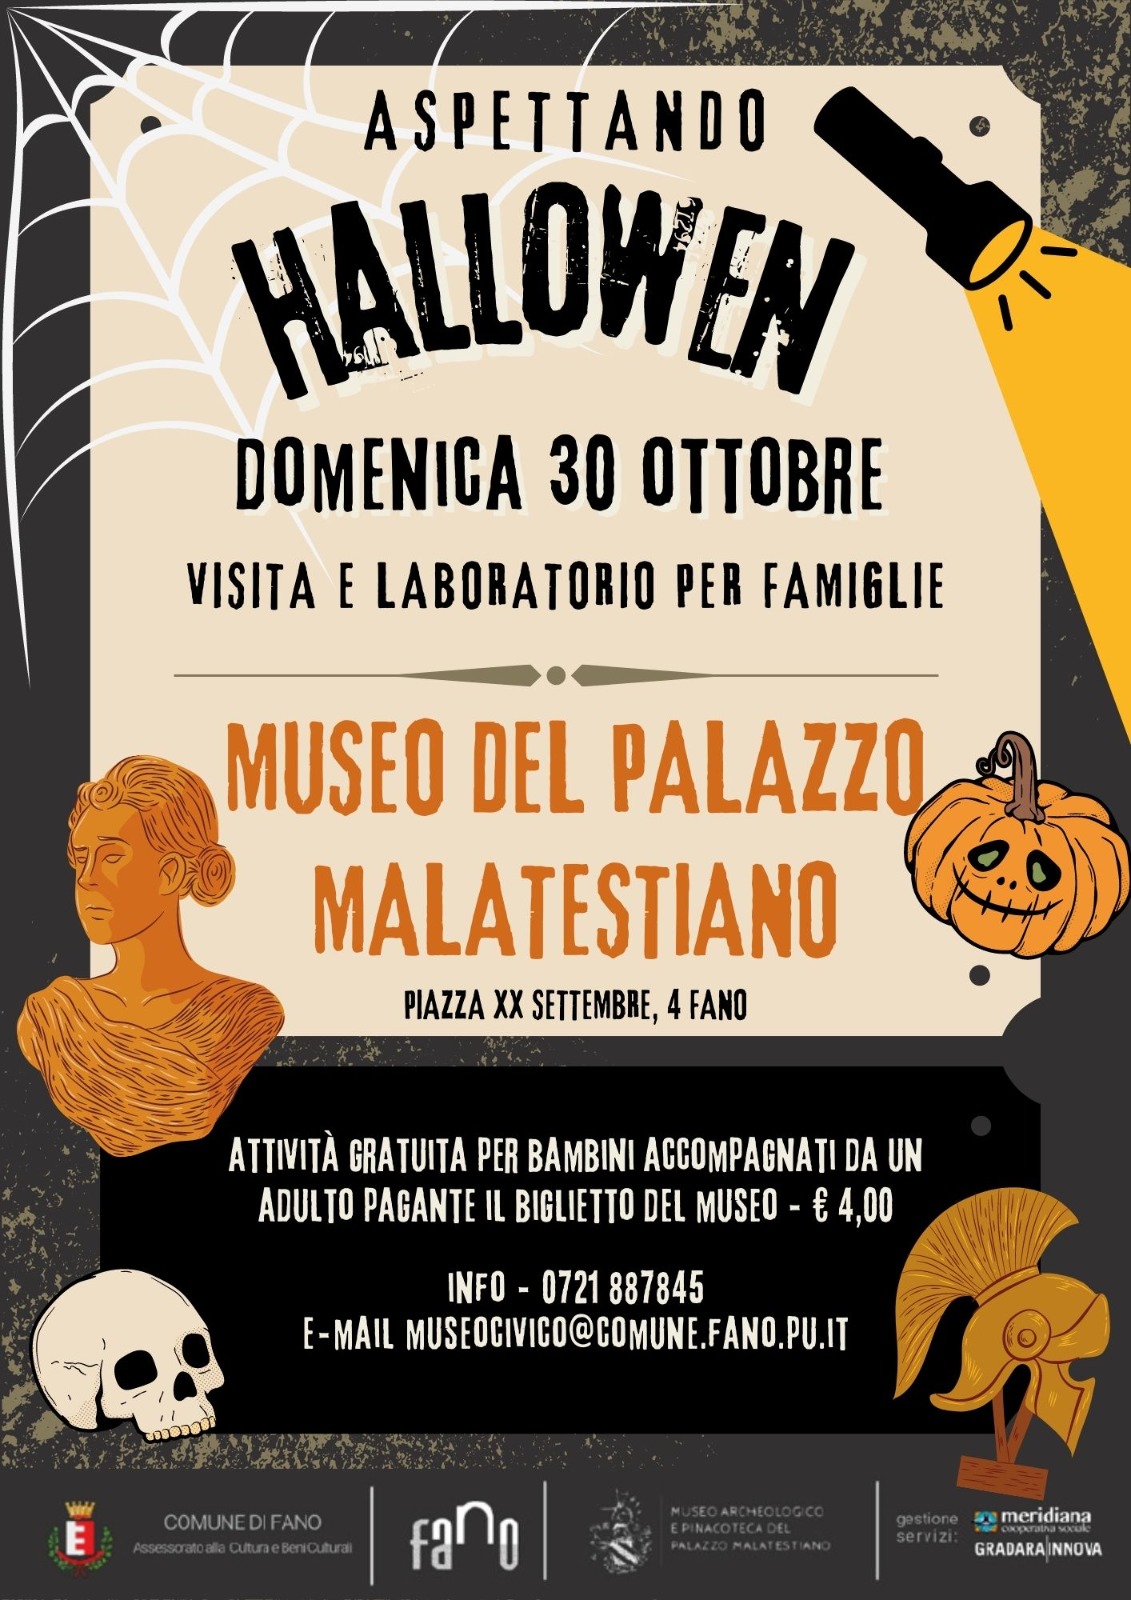 Domenica 30 ottobre "Aspettando Halloween" al Museo del Palazzo Malatestiano di Fano. 